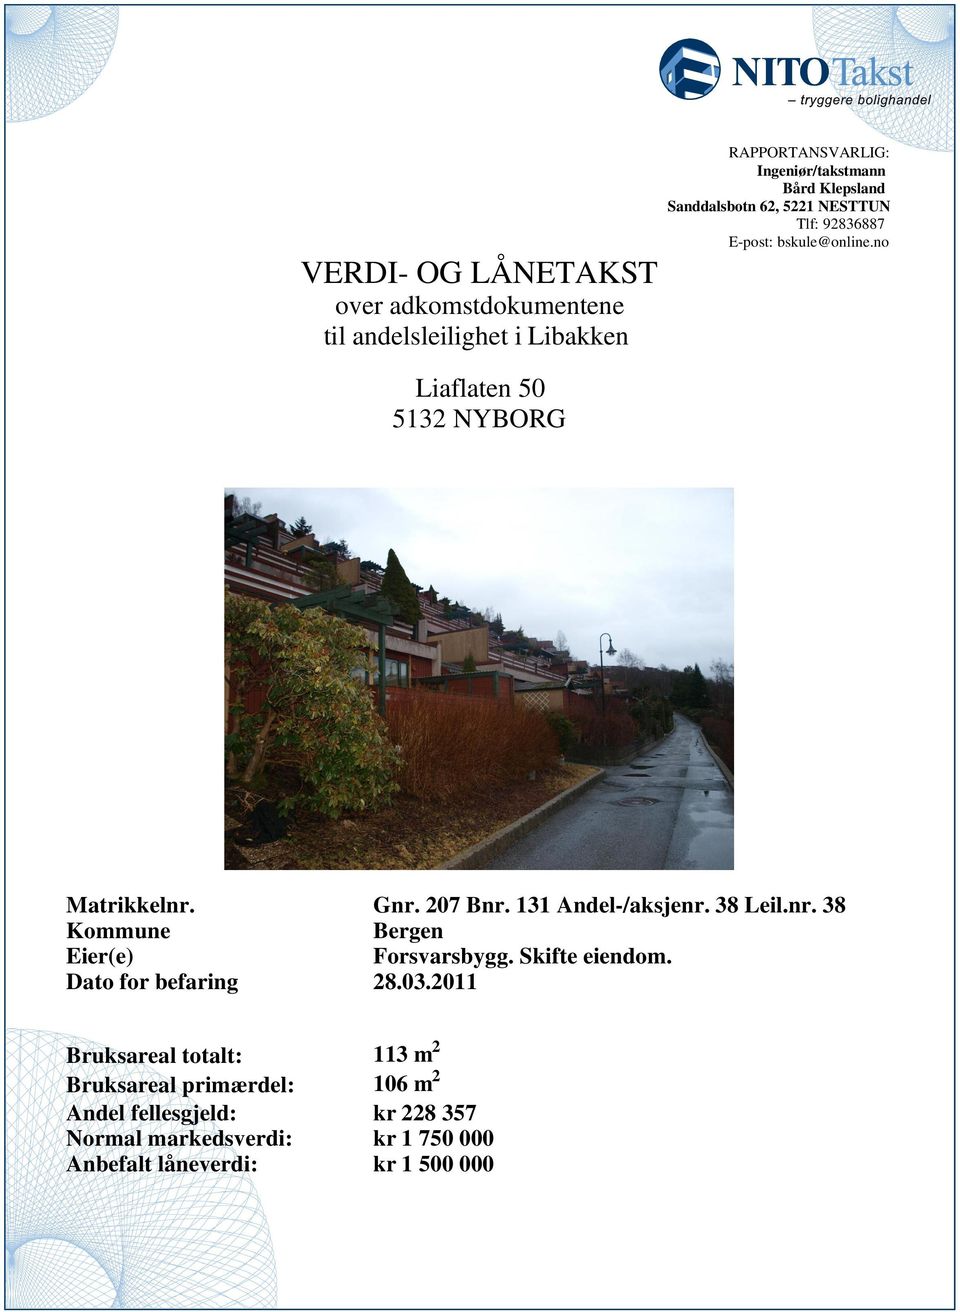 Leilnr 38 Kommune Bergen Eier(e) Forsvarsbygg Skifte eiendom Dato for befaring 803011 Bruksareal totalt: 113 m